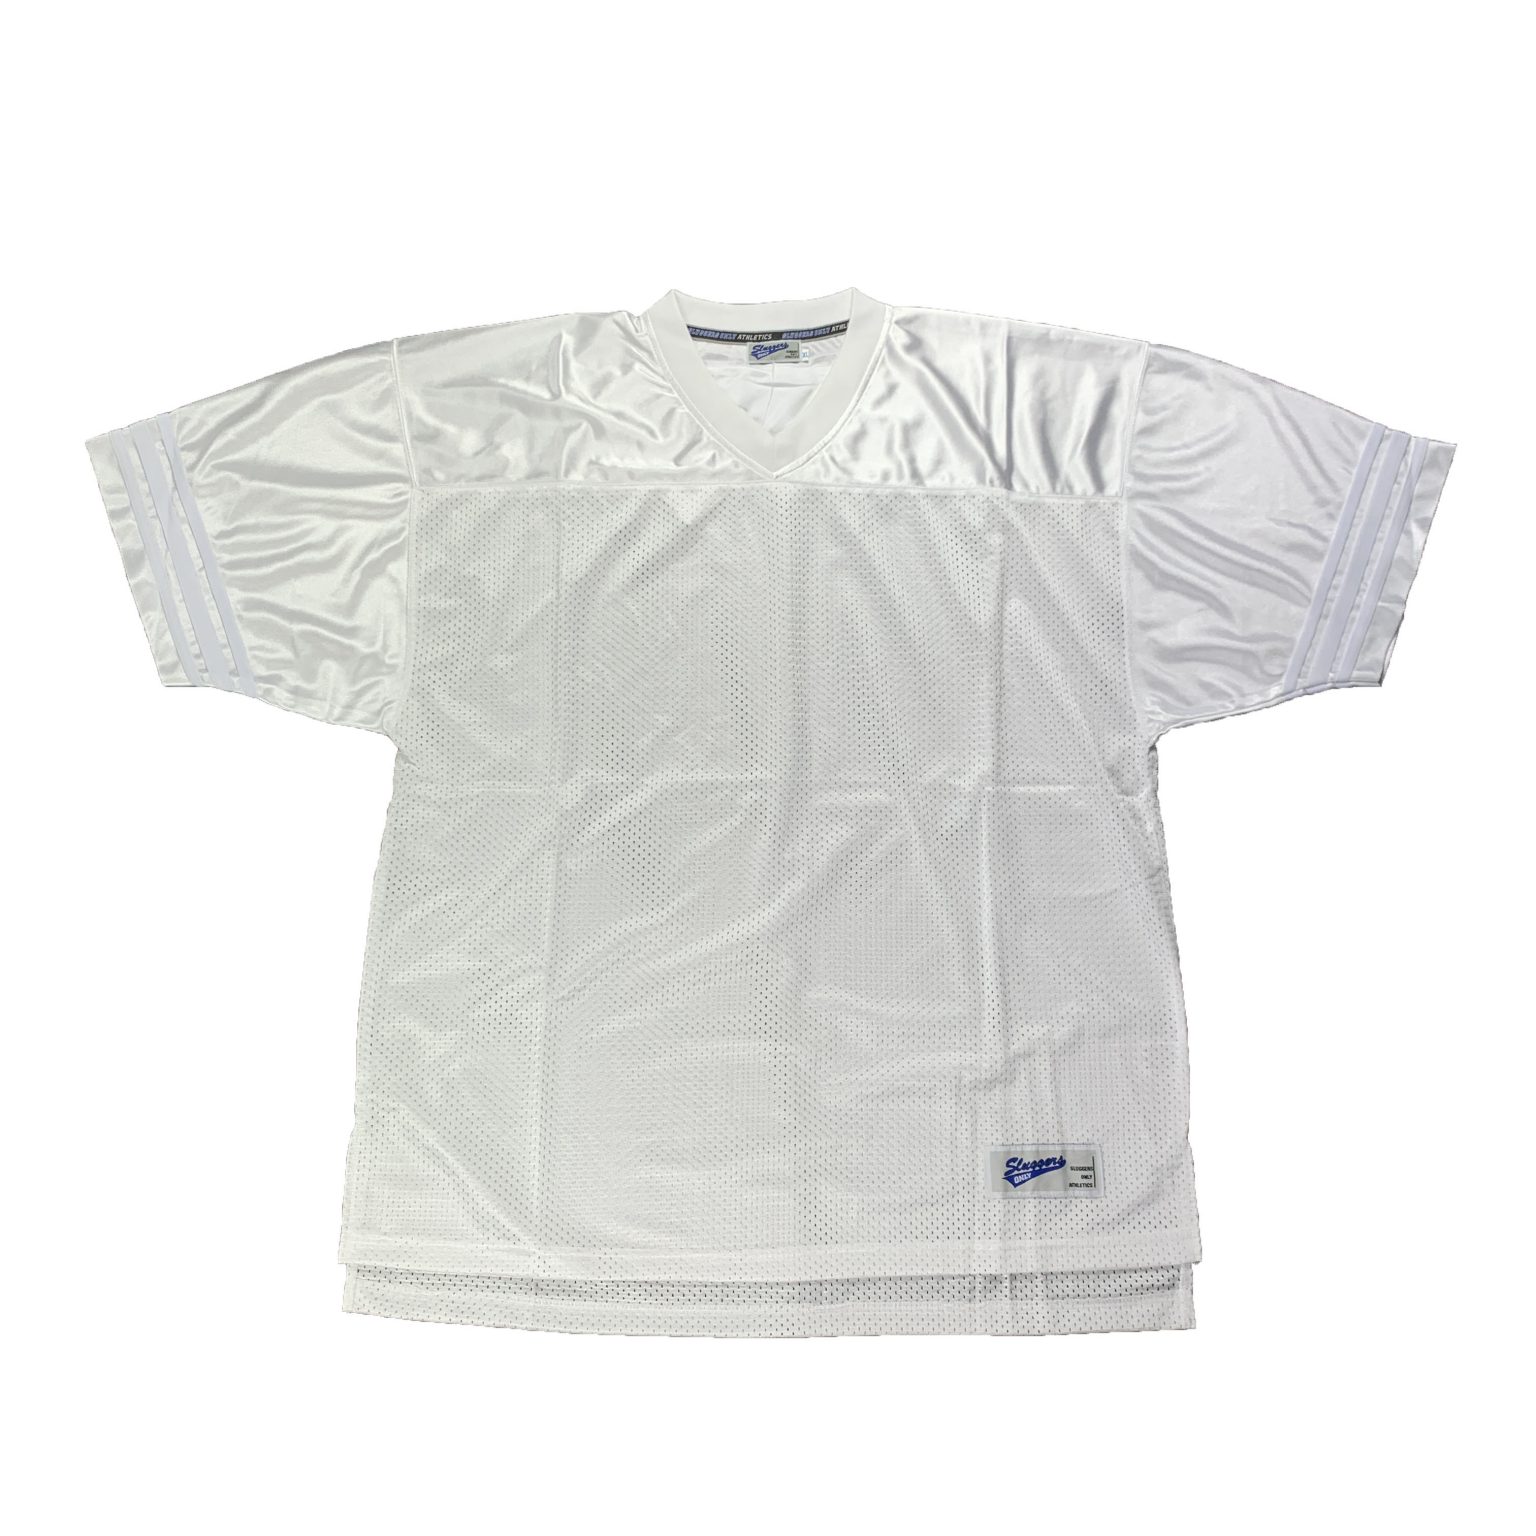 【フットボールシャツ】ホワイト 白 プレーン 無地 ビッグサイズ フットボールシャツ(basket shirt plain big size